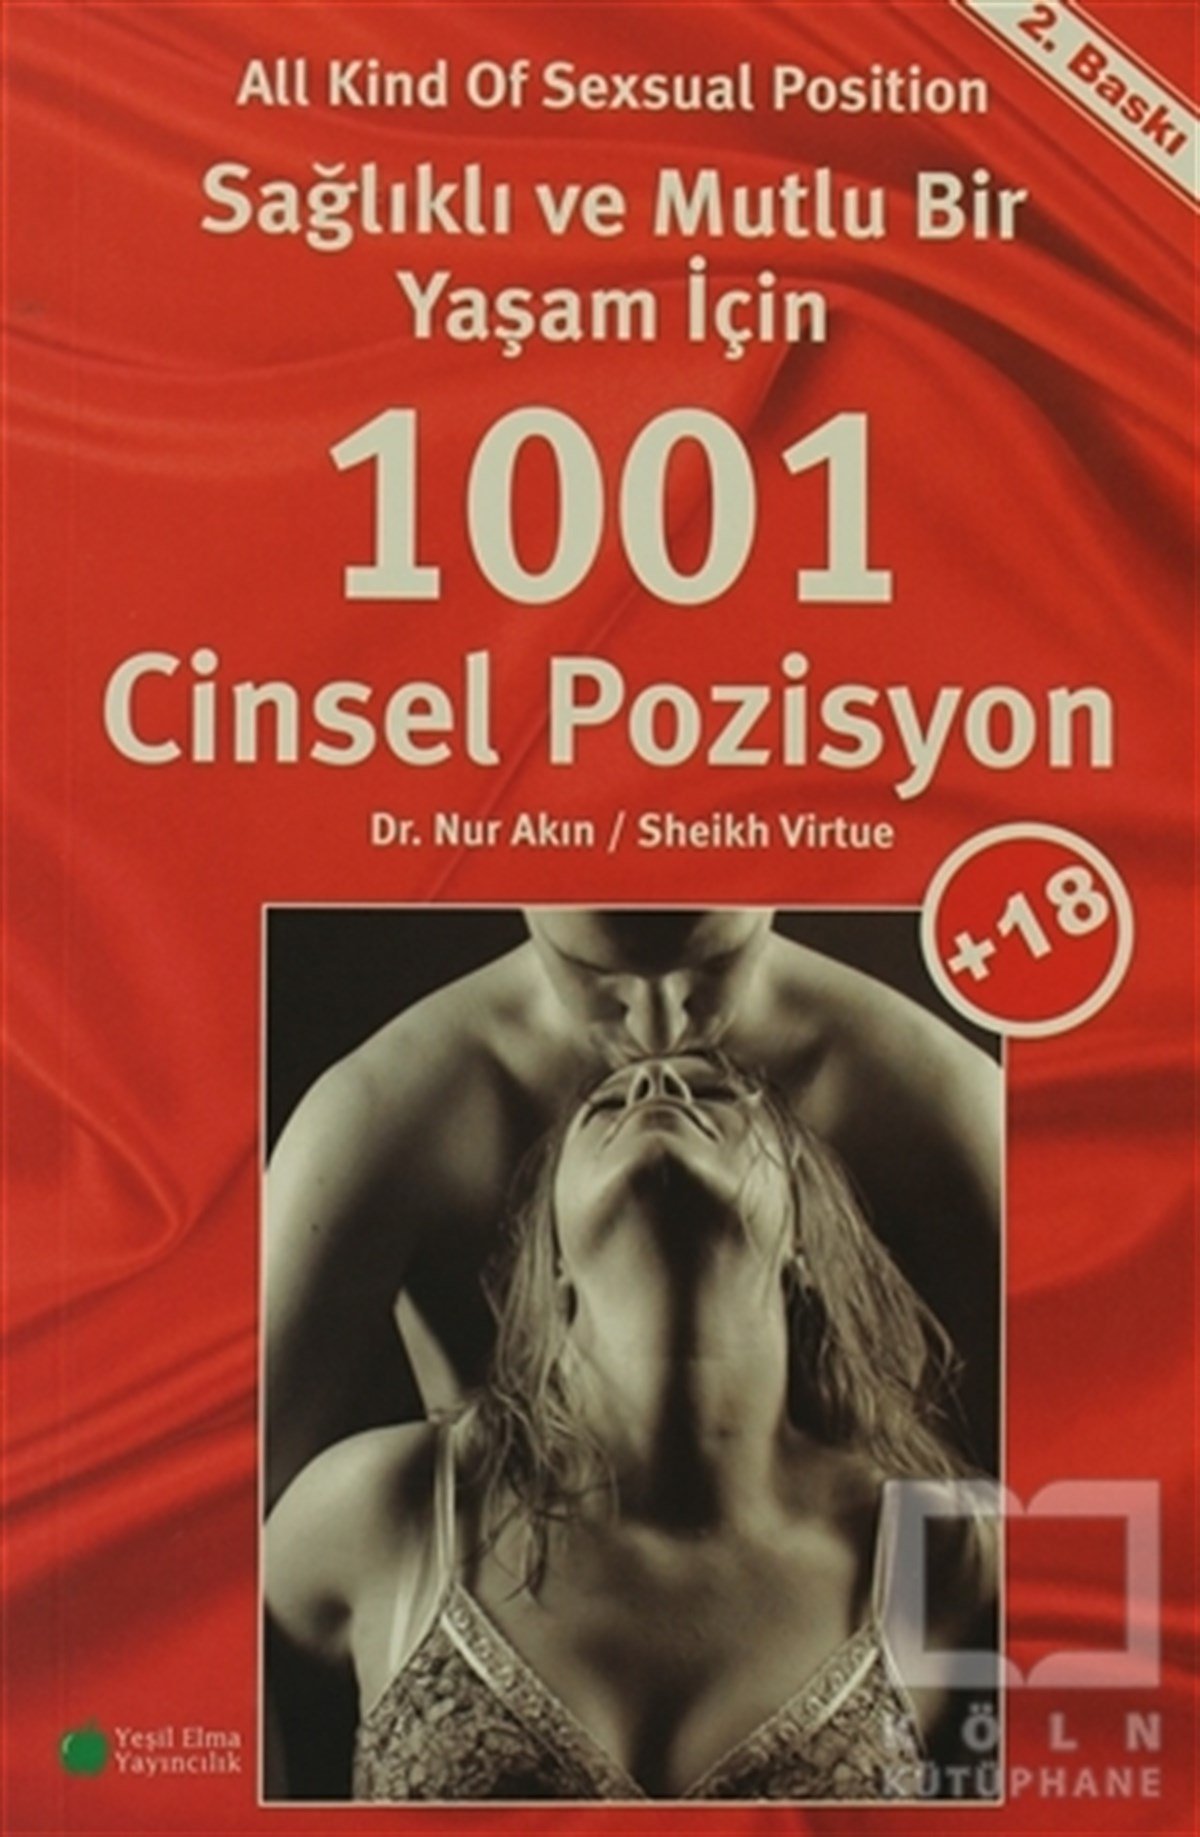 Sağlıklı ve Mutlu Bir Yaşam İçin 1001 Cinsel Pozisyon | Köln Kütüphane